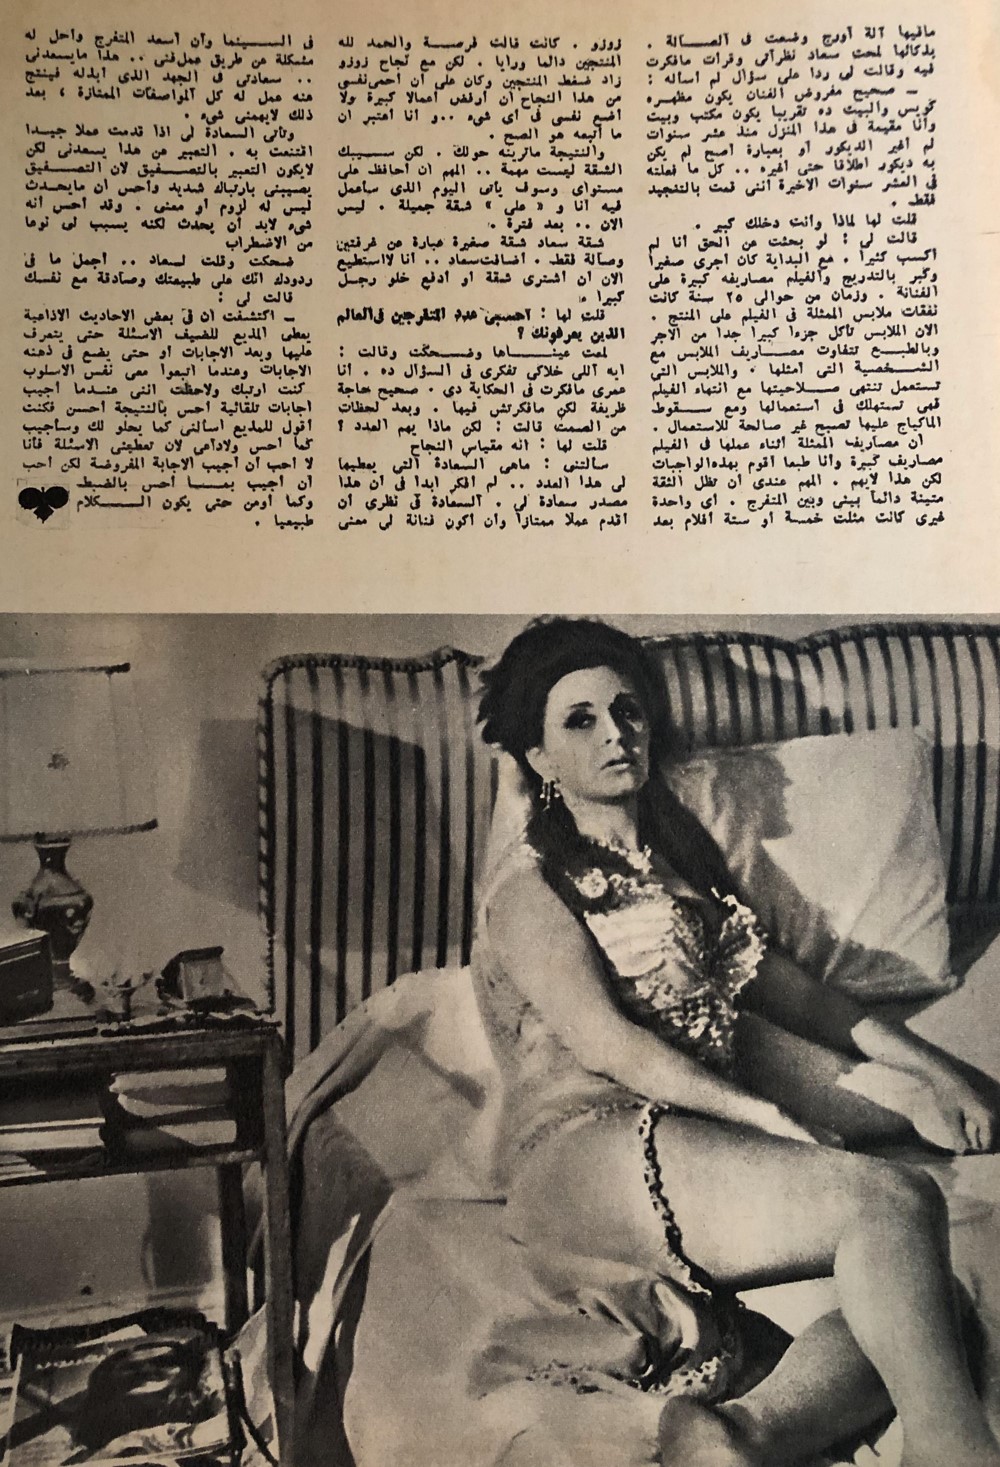 حسني - حوار صحفي : جلسة عائلية مع .. سعاد حسني 1974 م 423